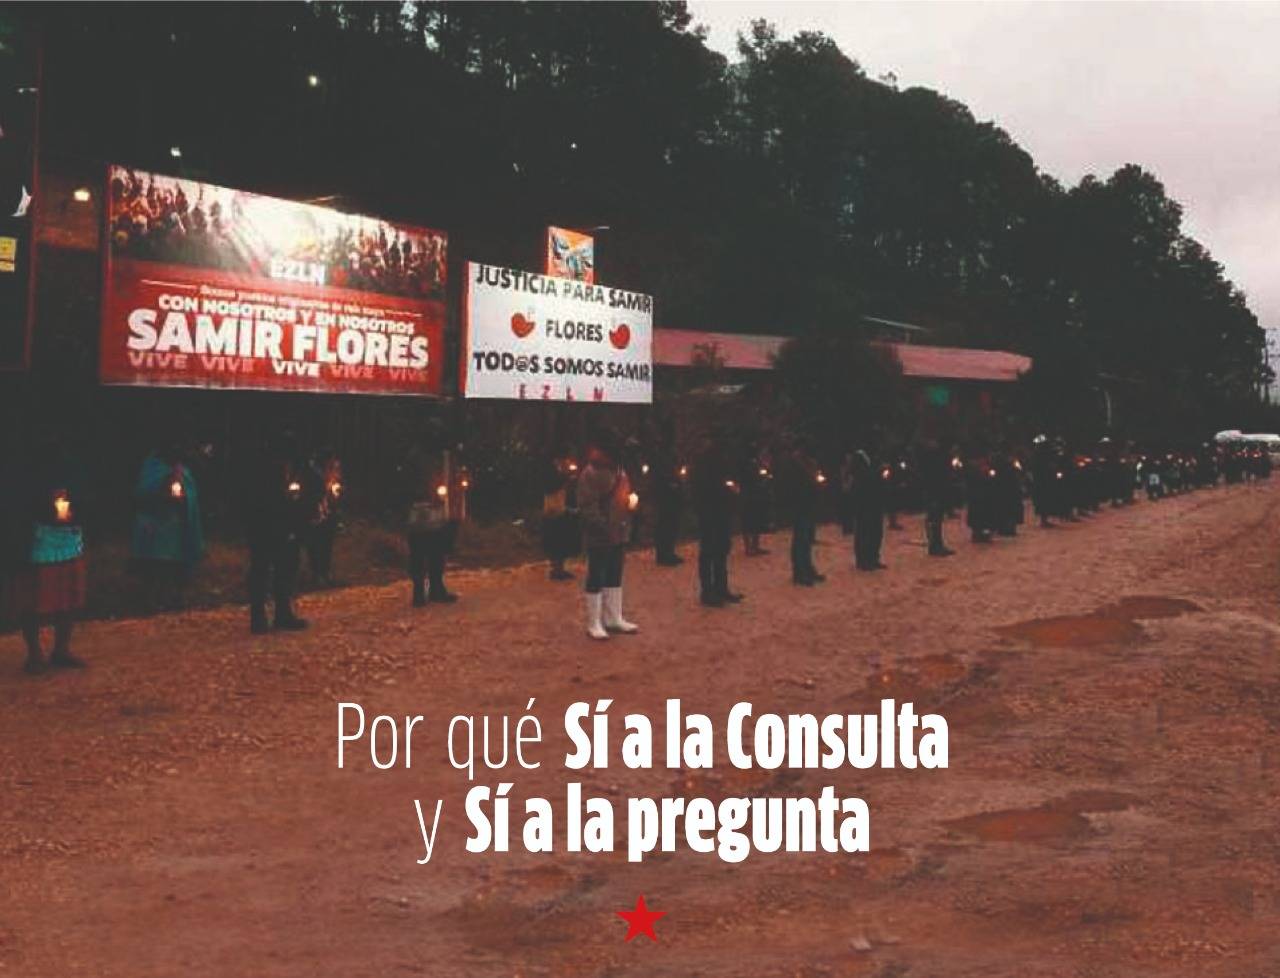 EZLN pide participar en consulta popular y votar por el "sí"